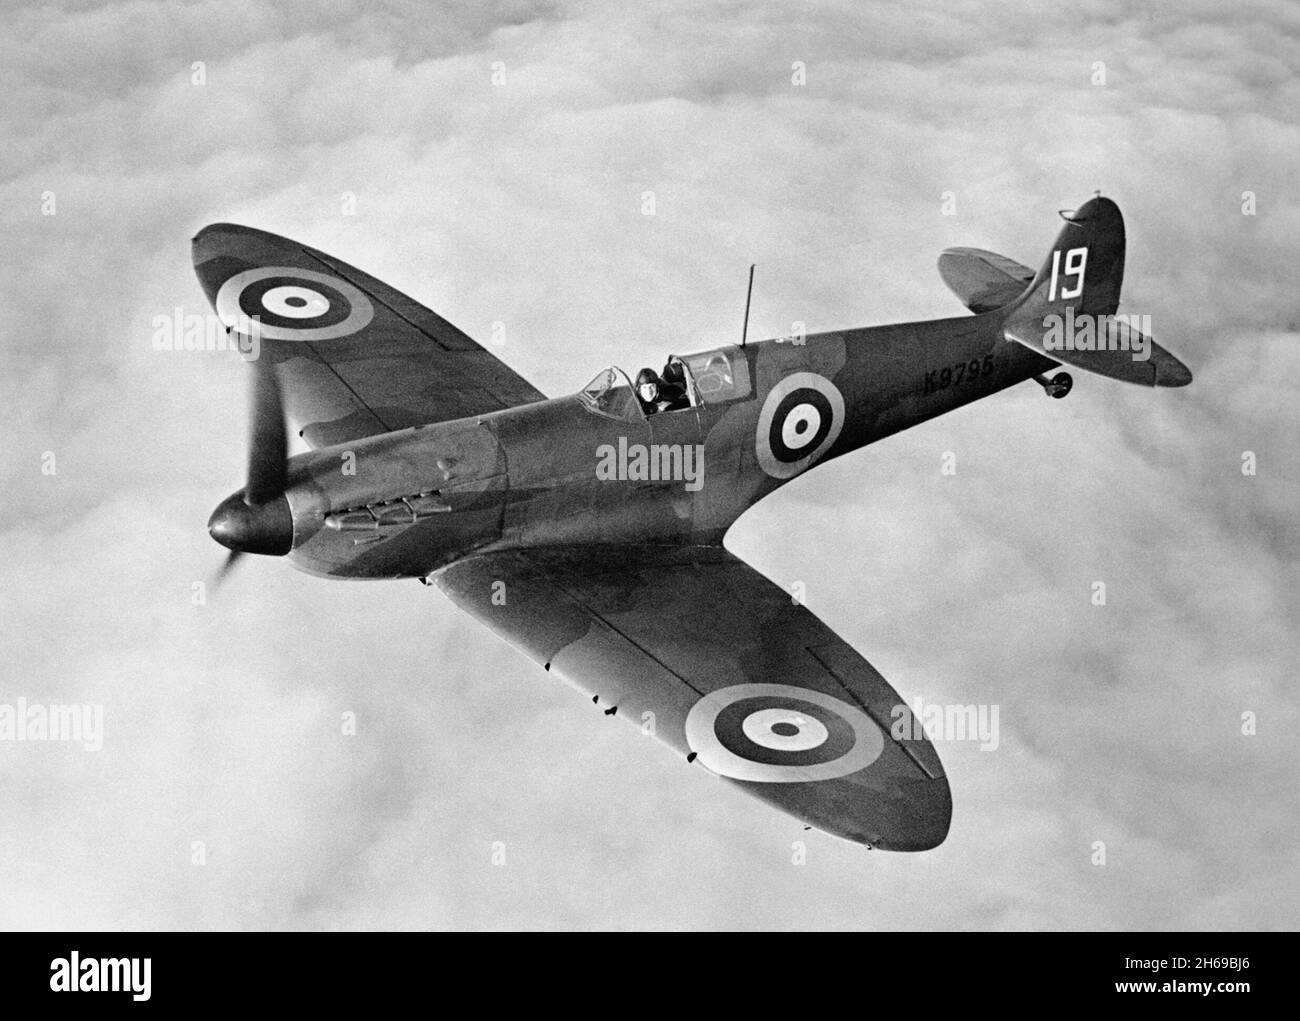 CAMBRIDGESHIRE, ANGLETERRE, Royaume-Uni - 1938 - Un Spitfire Supermarine K9795 en vol au-dessus de l'est de l'Angleterre en 1938.La 9e production Mk i Supermarine Spitfire Banque D'Images